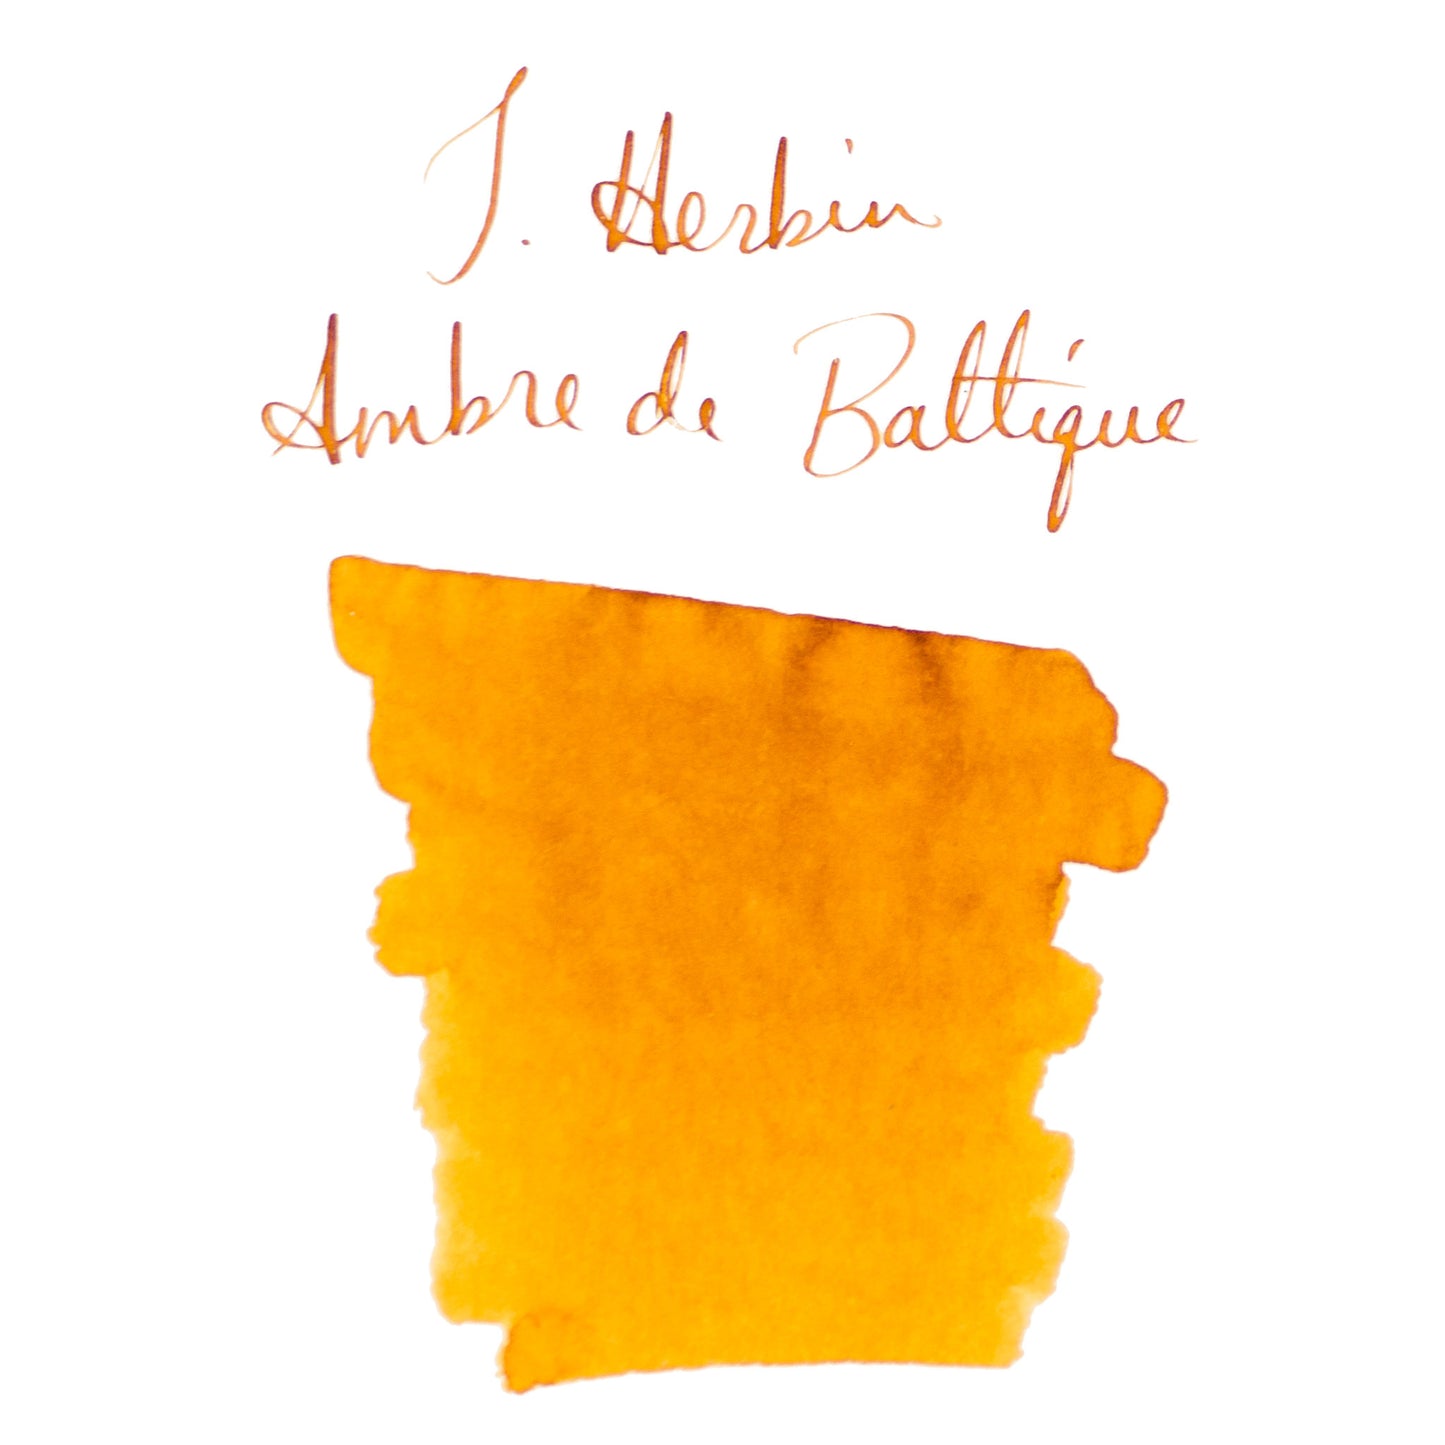 Jacques Herbin Essentials Ambre de Baltique Ink Cartridges